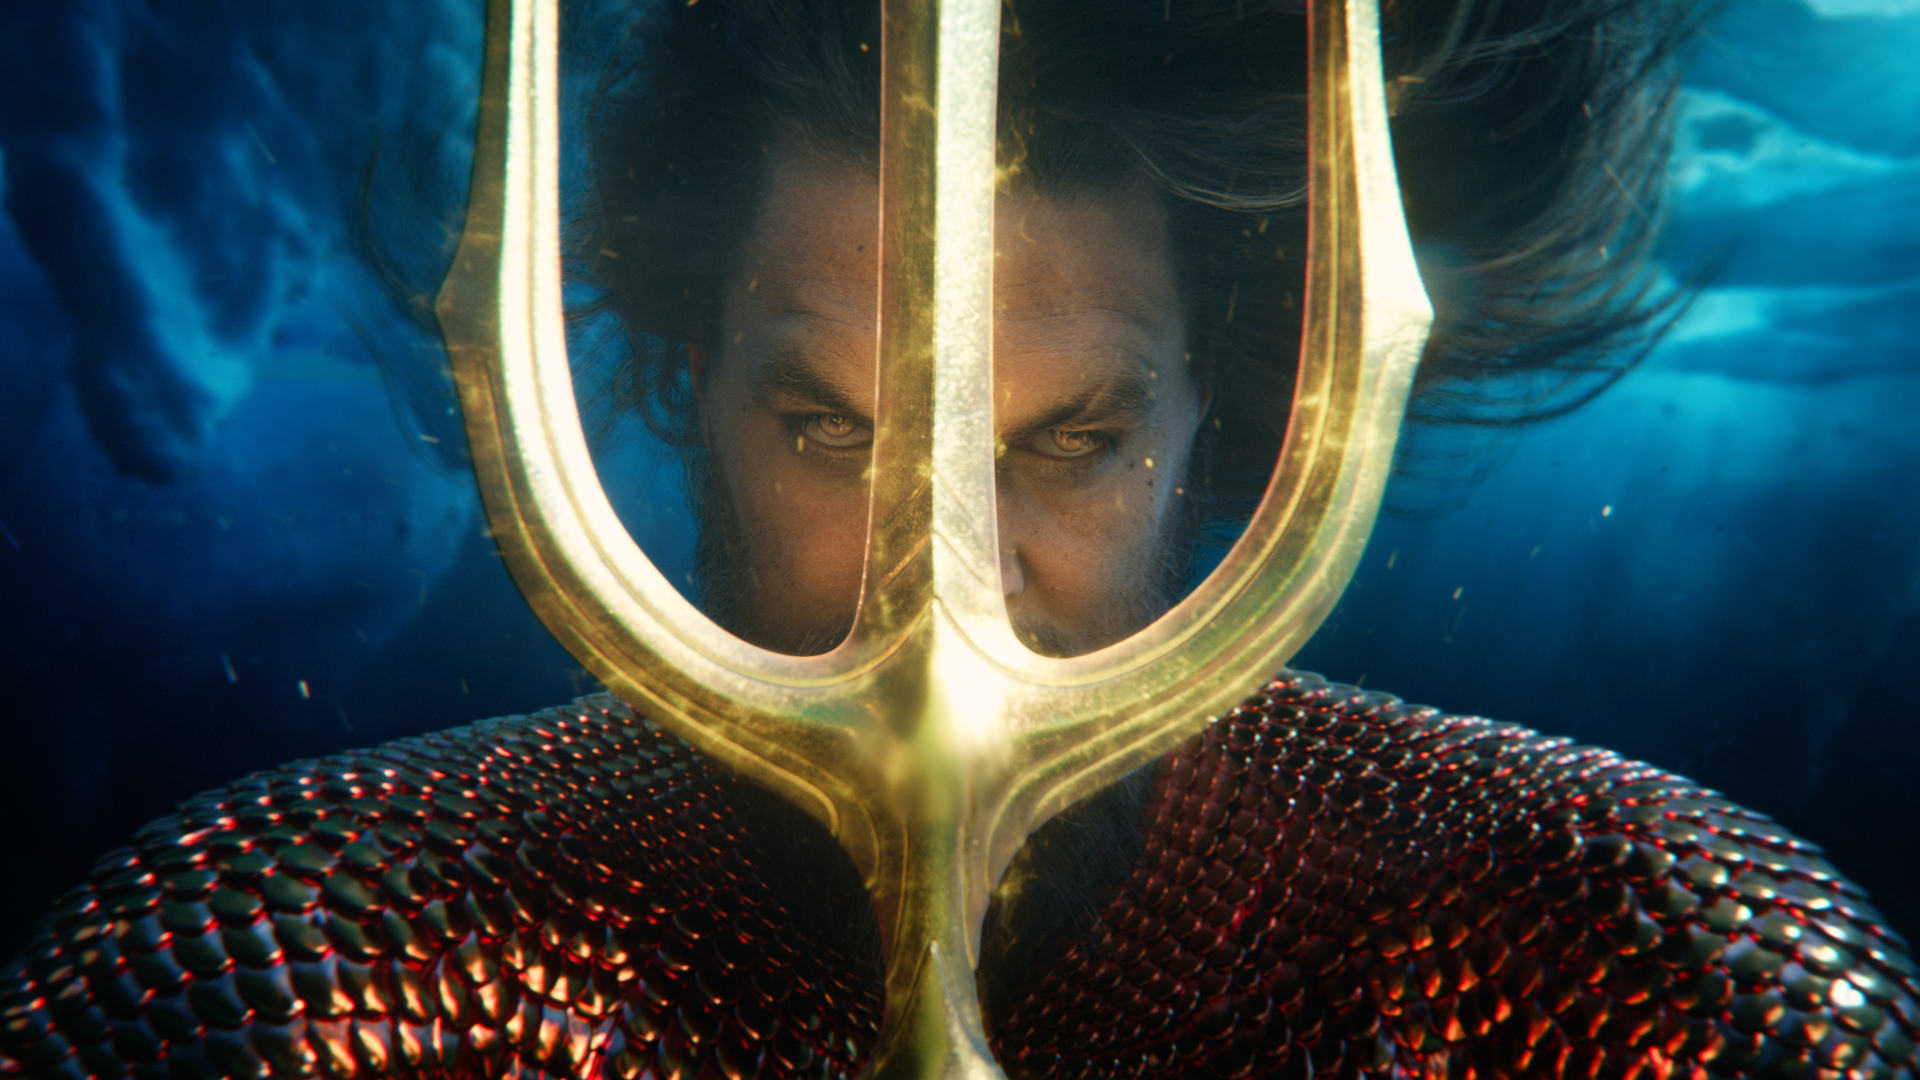 آکوامن با ترایدنت نپتون آماده مبارزه در فیلم Aquaman and the Lost Kingdom می شود